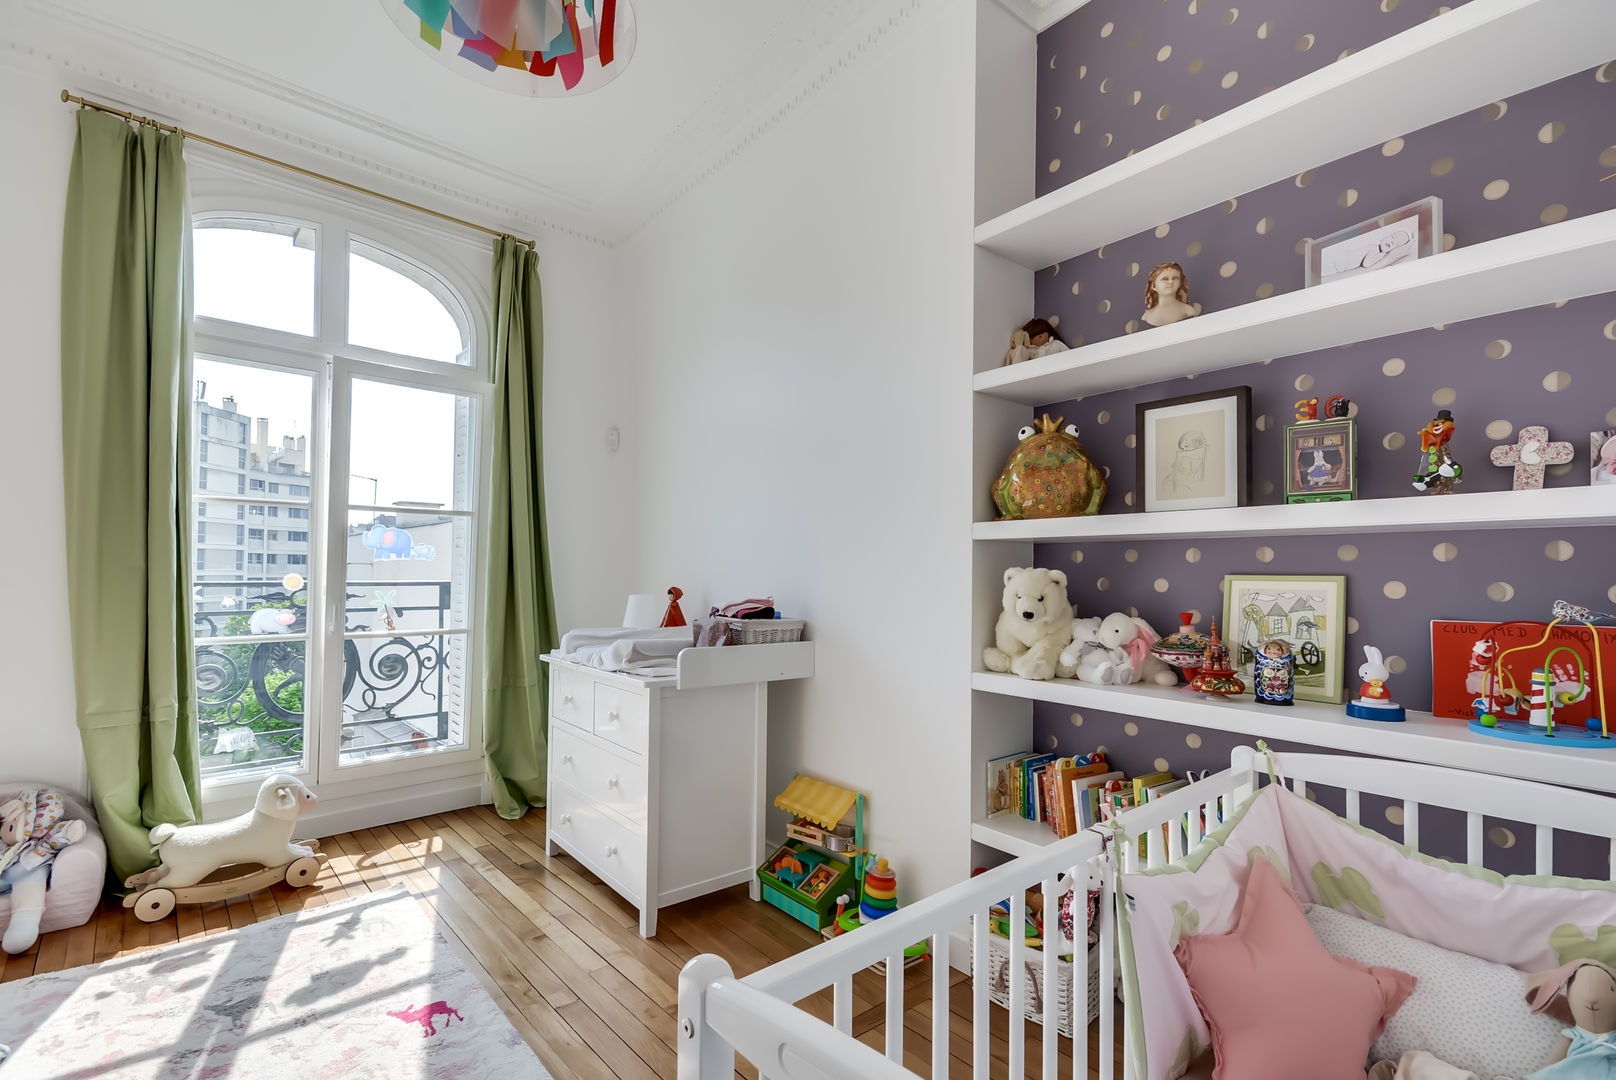 Un appartement haussmanien revisité - Paris 16e, ATELIER FB ATELIER FB Nursery/kid’s room